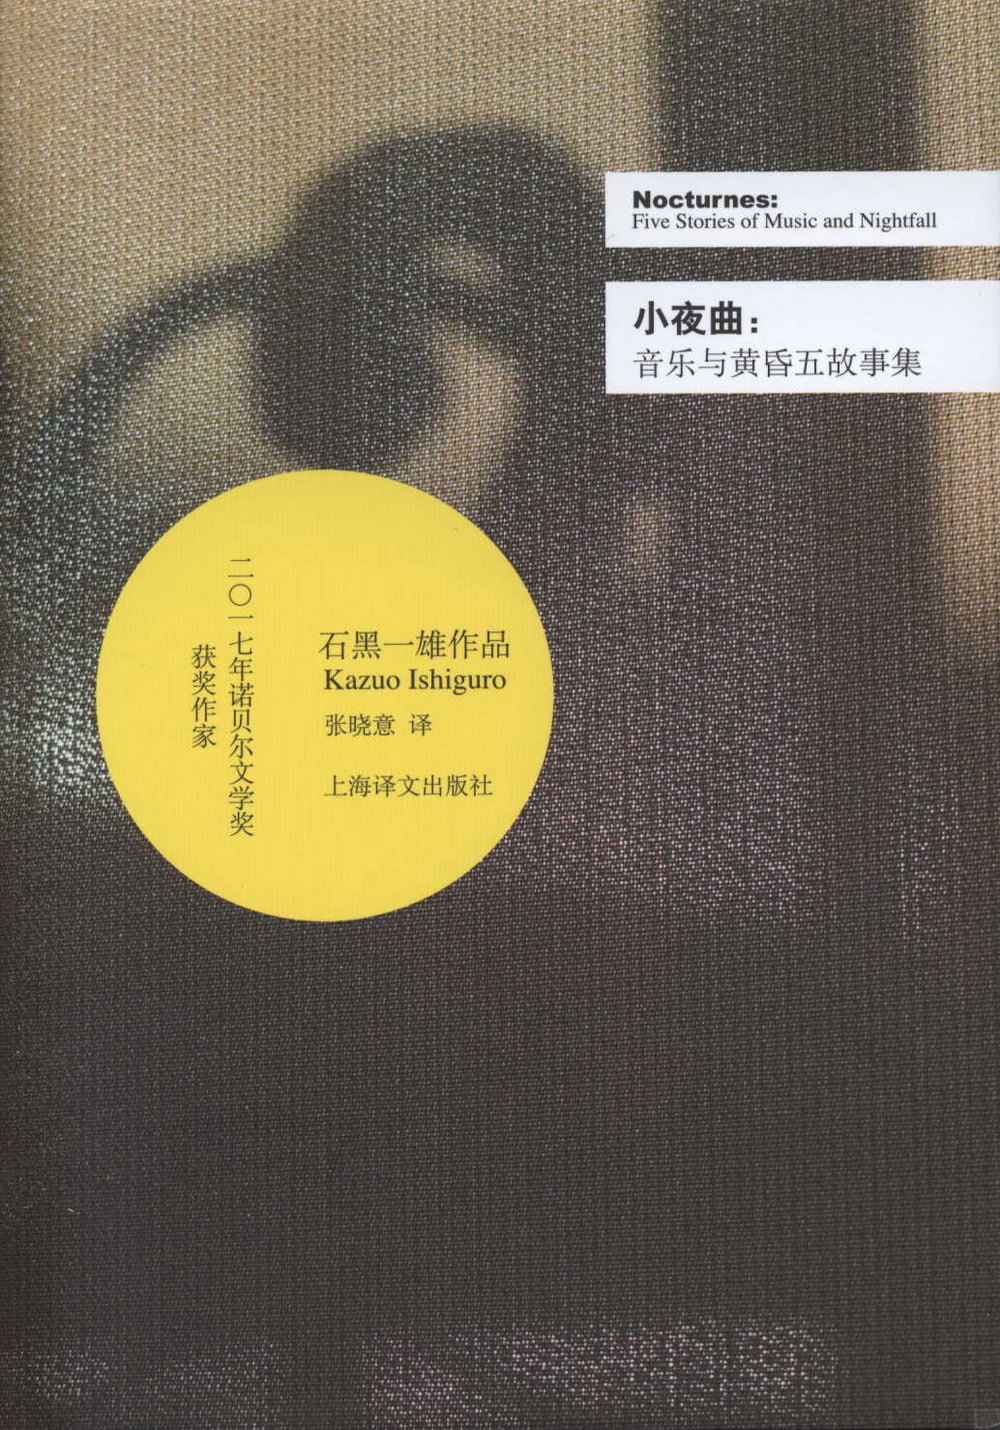 石黑一雄(Kazuo Ishiguro)文集 : 小夜曲(音樂與黃昏五故事集)